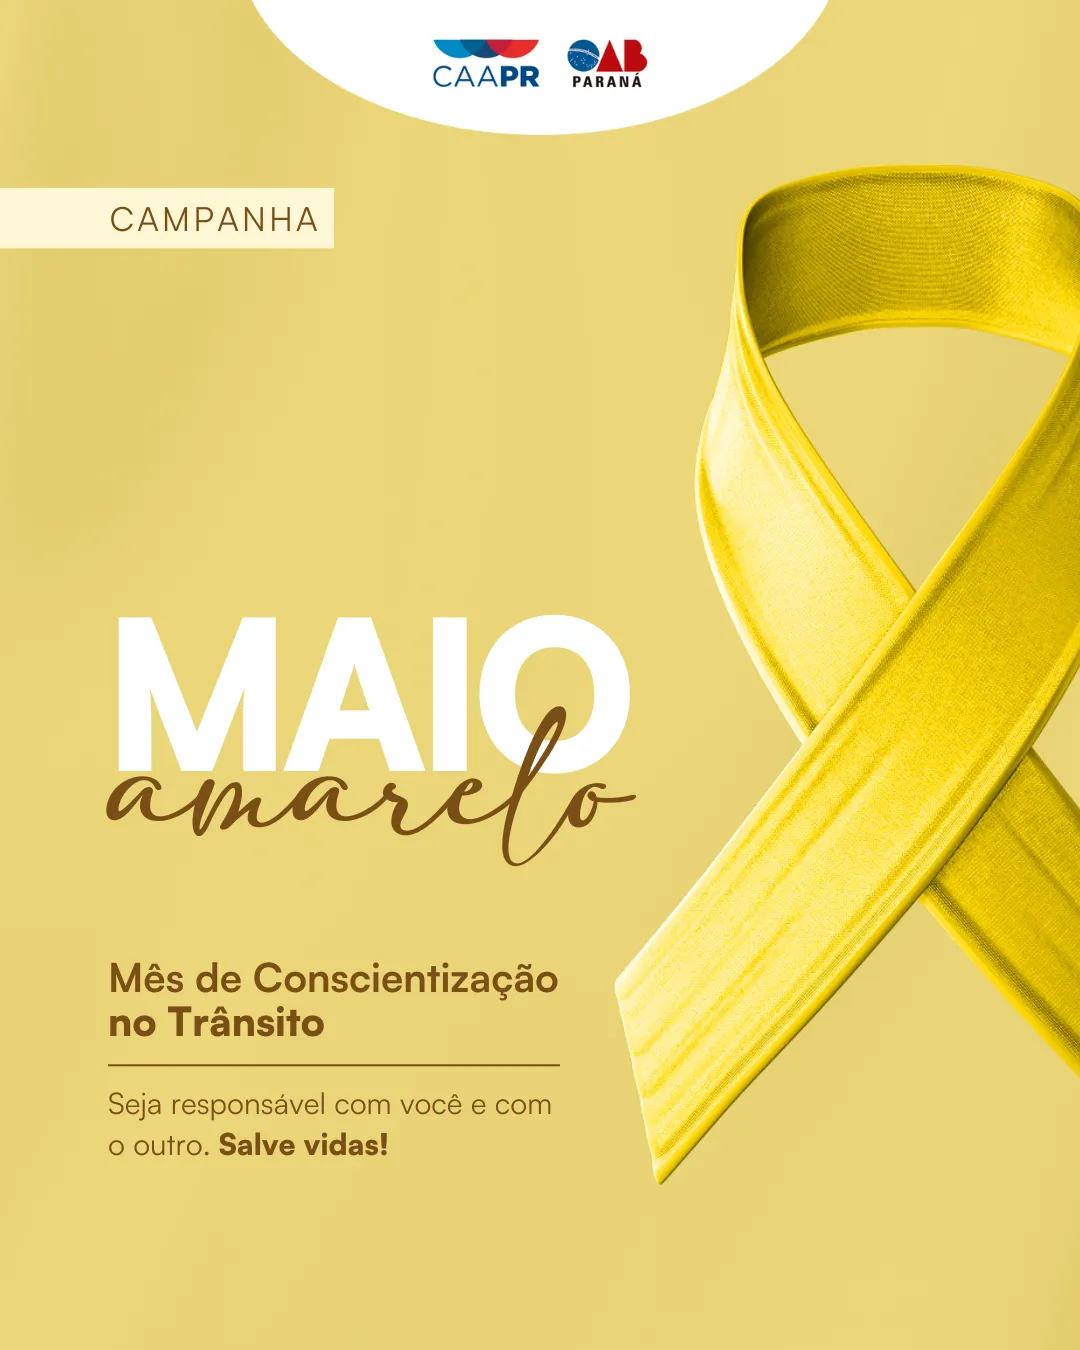 CAAPR apoia campanha Maio Amarelo para conscientizar sobre segurança no trânsito